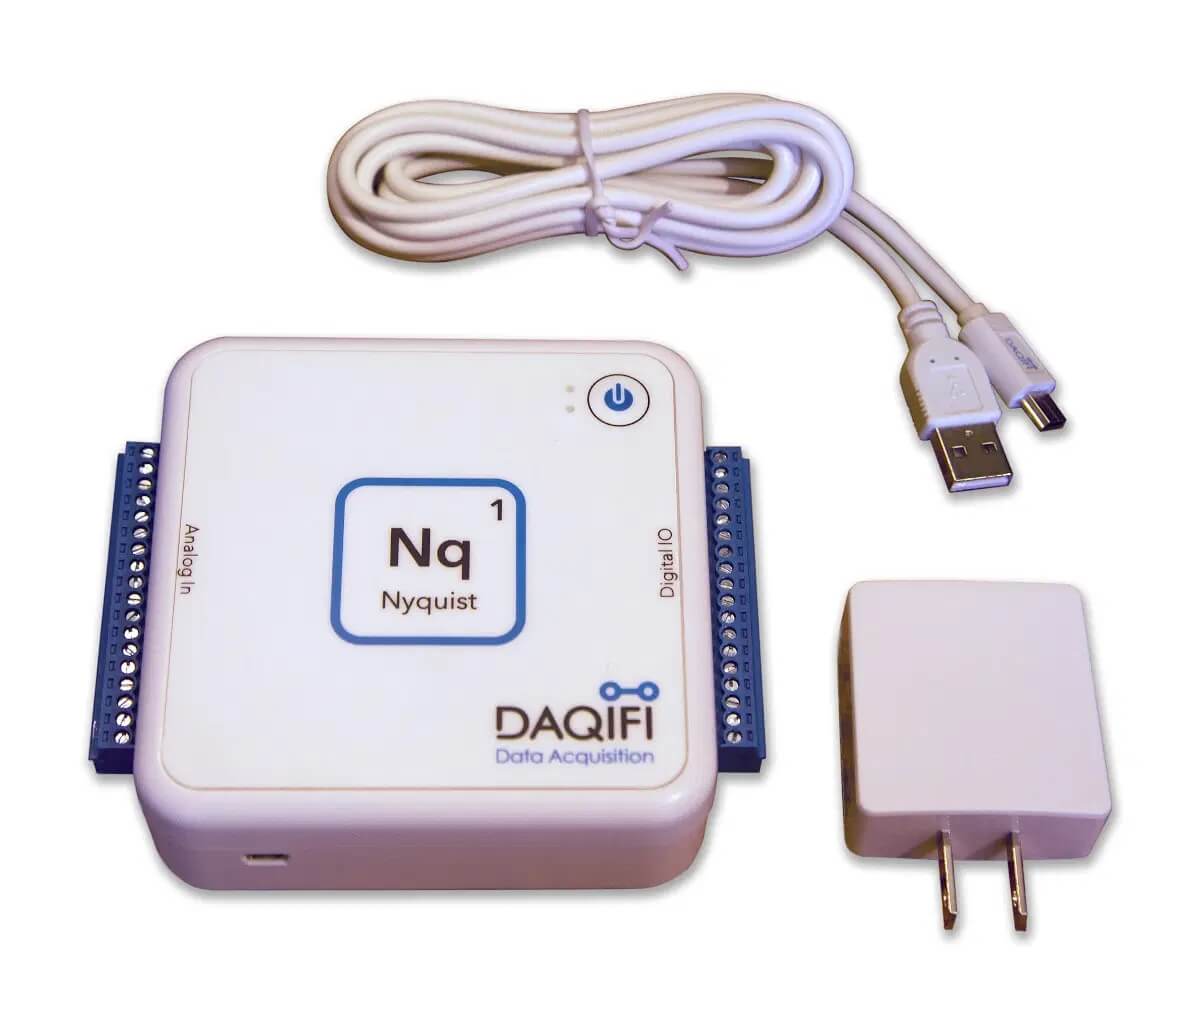 WiFi物联网数据采集设备—DAQiFi Nyquist 1